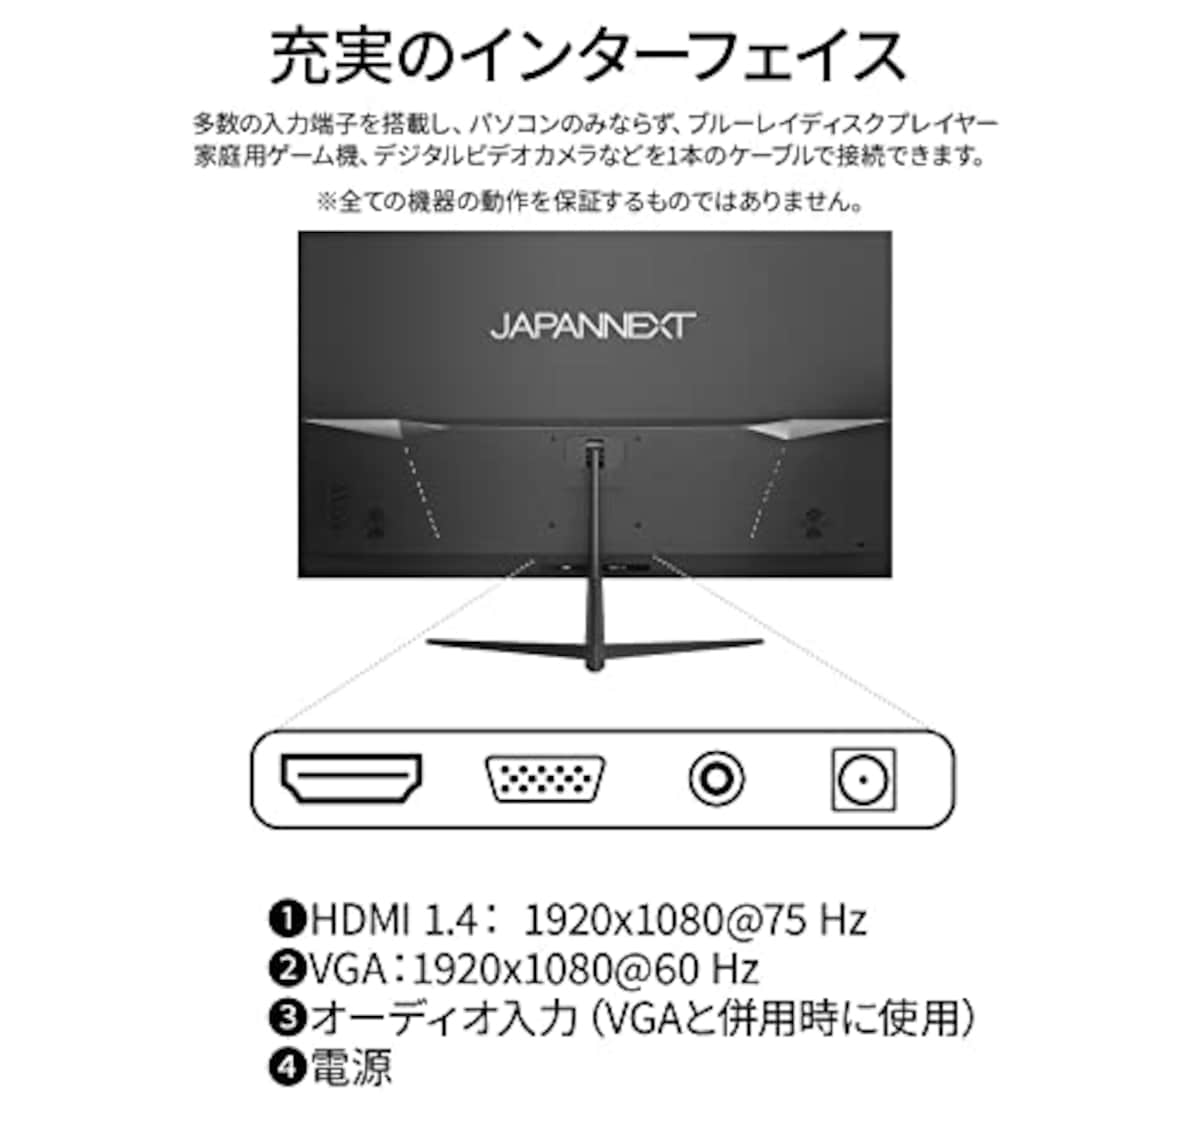  JAPANNEXT 32インチVAパネル搭載 フルHD液晶モニター JN-V32FLFHD HDMI VGA フレームレスデザイン画像5 